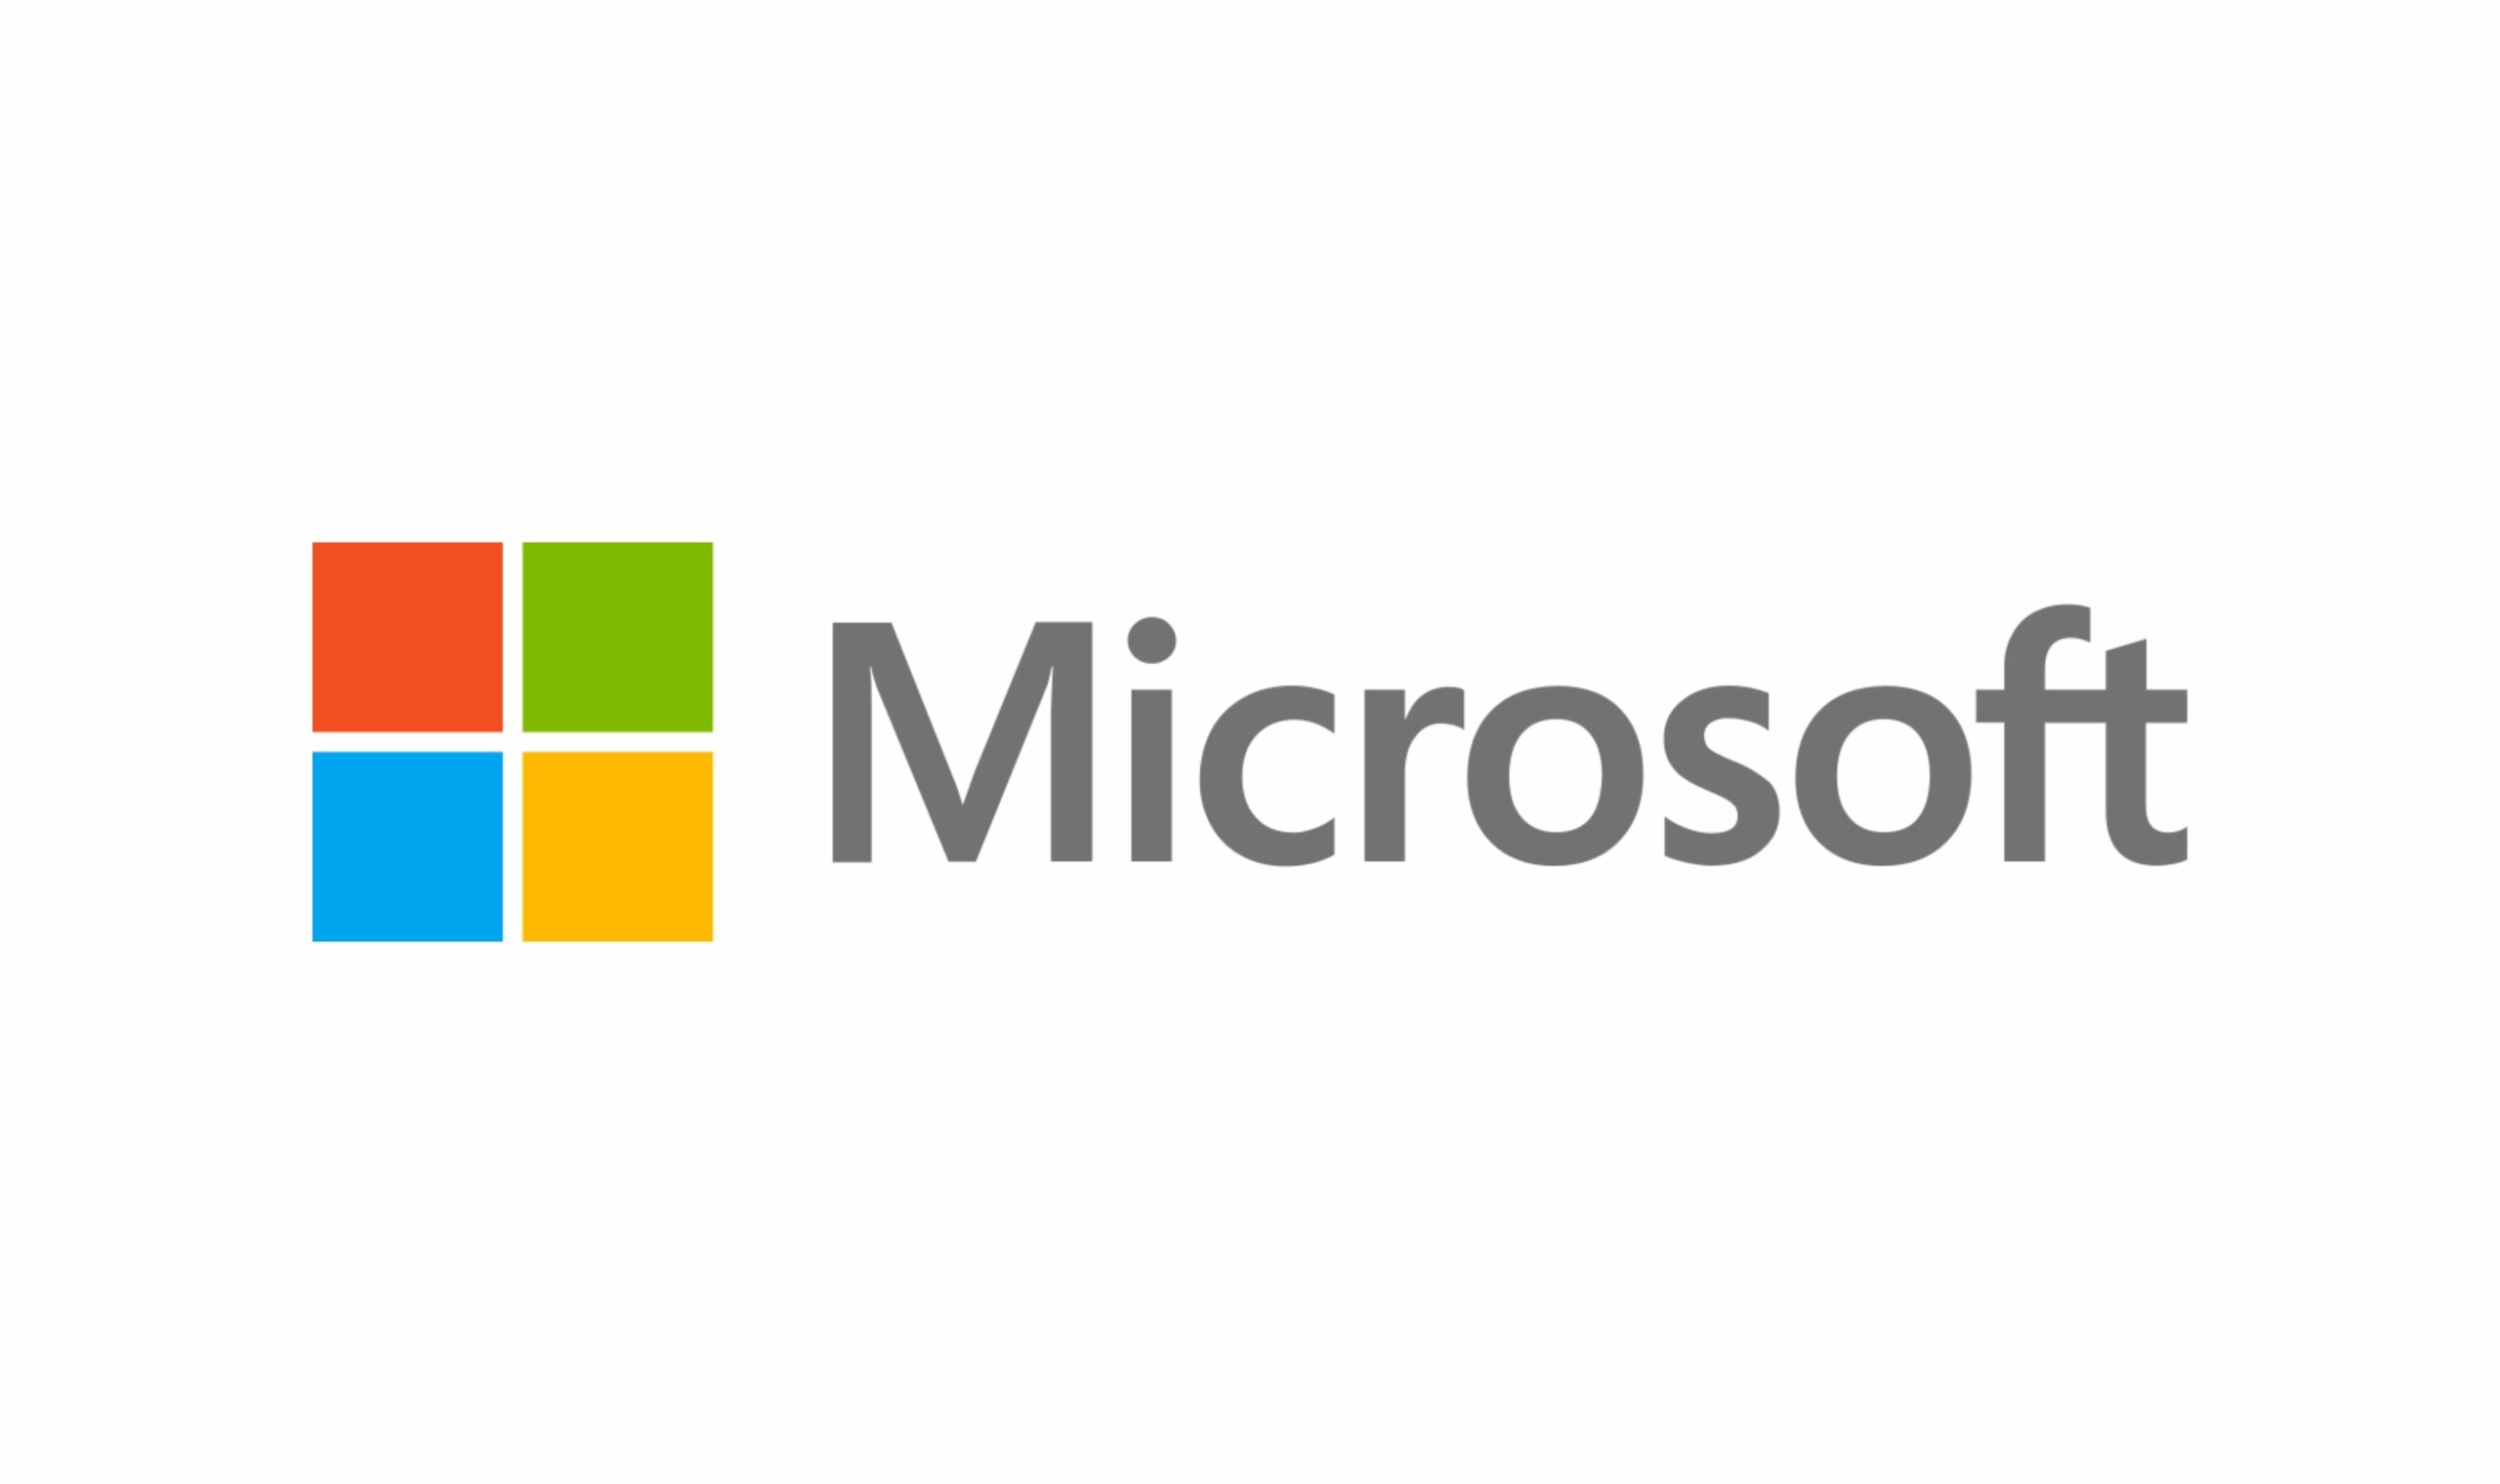 ឡូហ្គោ Microsoft មានលក្ខណៈពិសេស